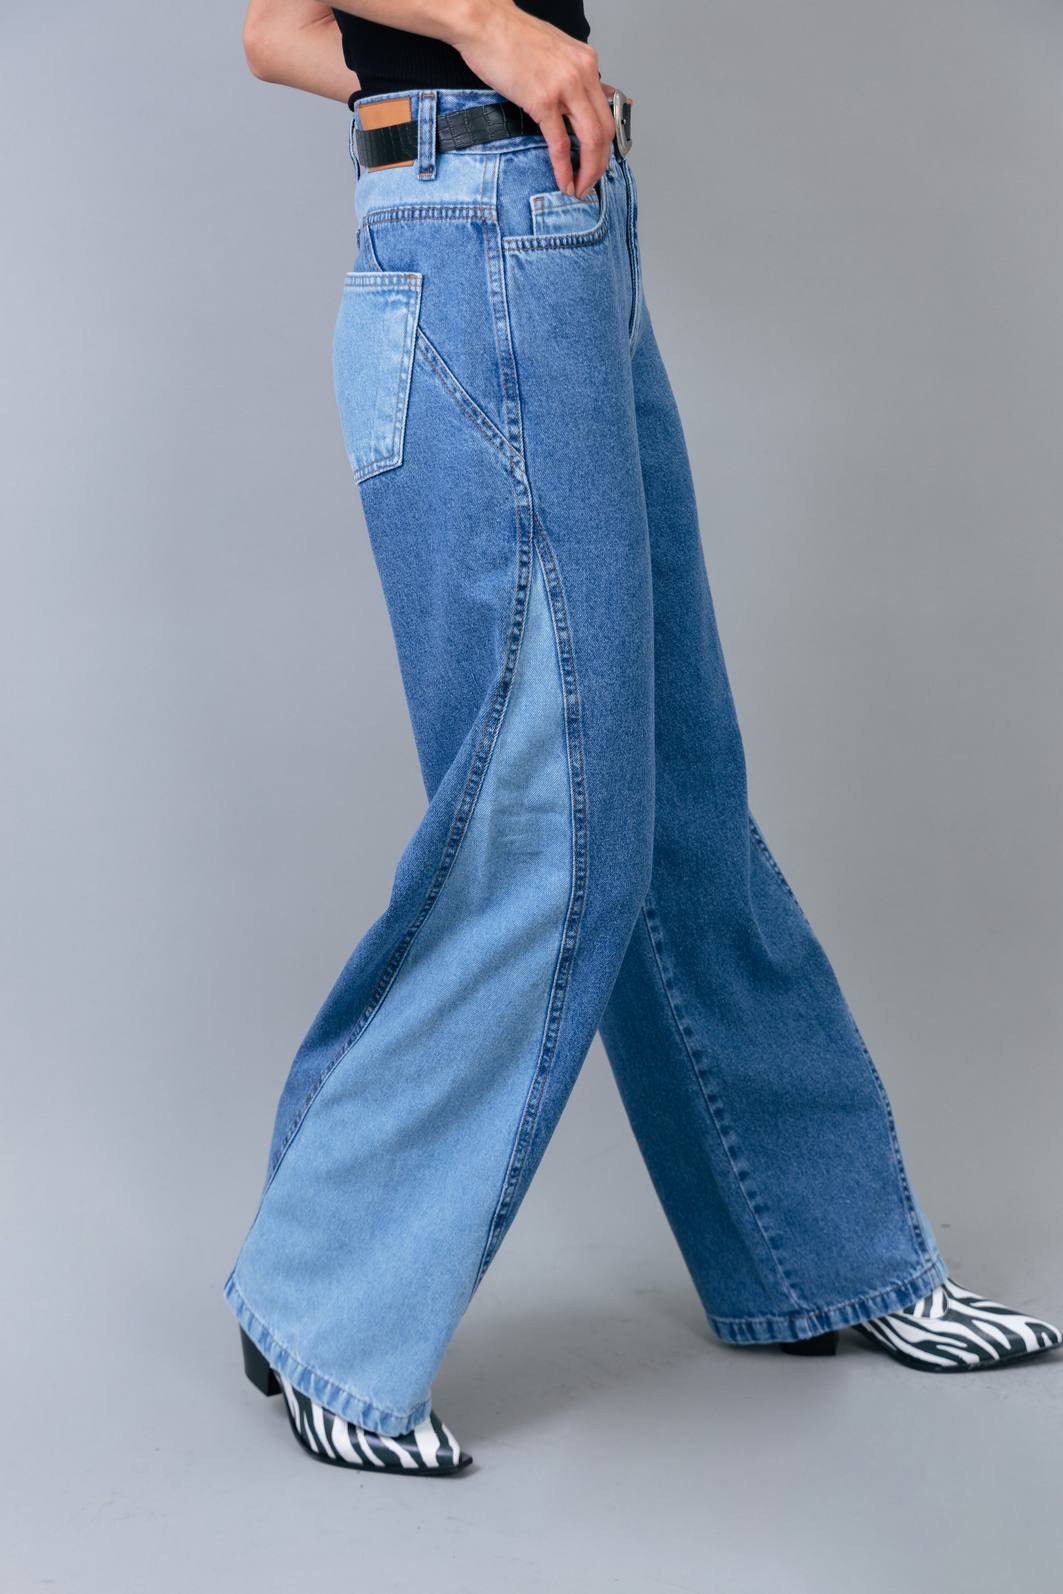 Cinco Estilos Diferentes com uma Calça Flare Jeans - Gabi May